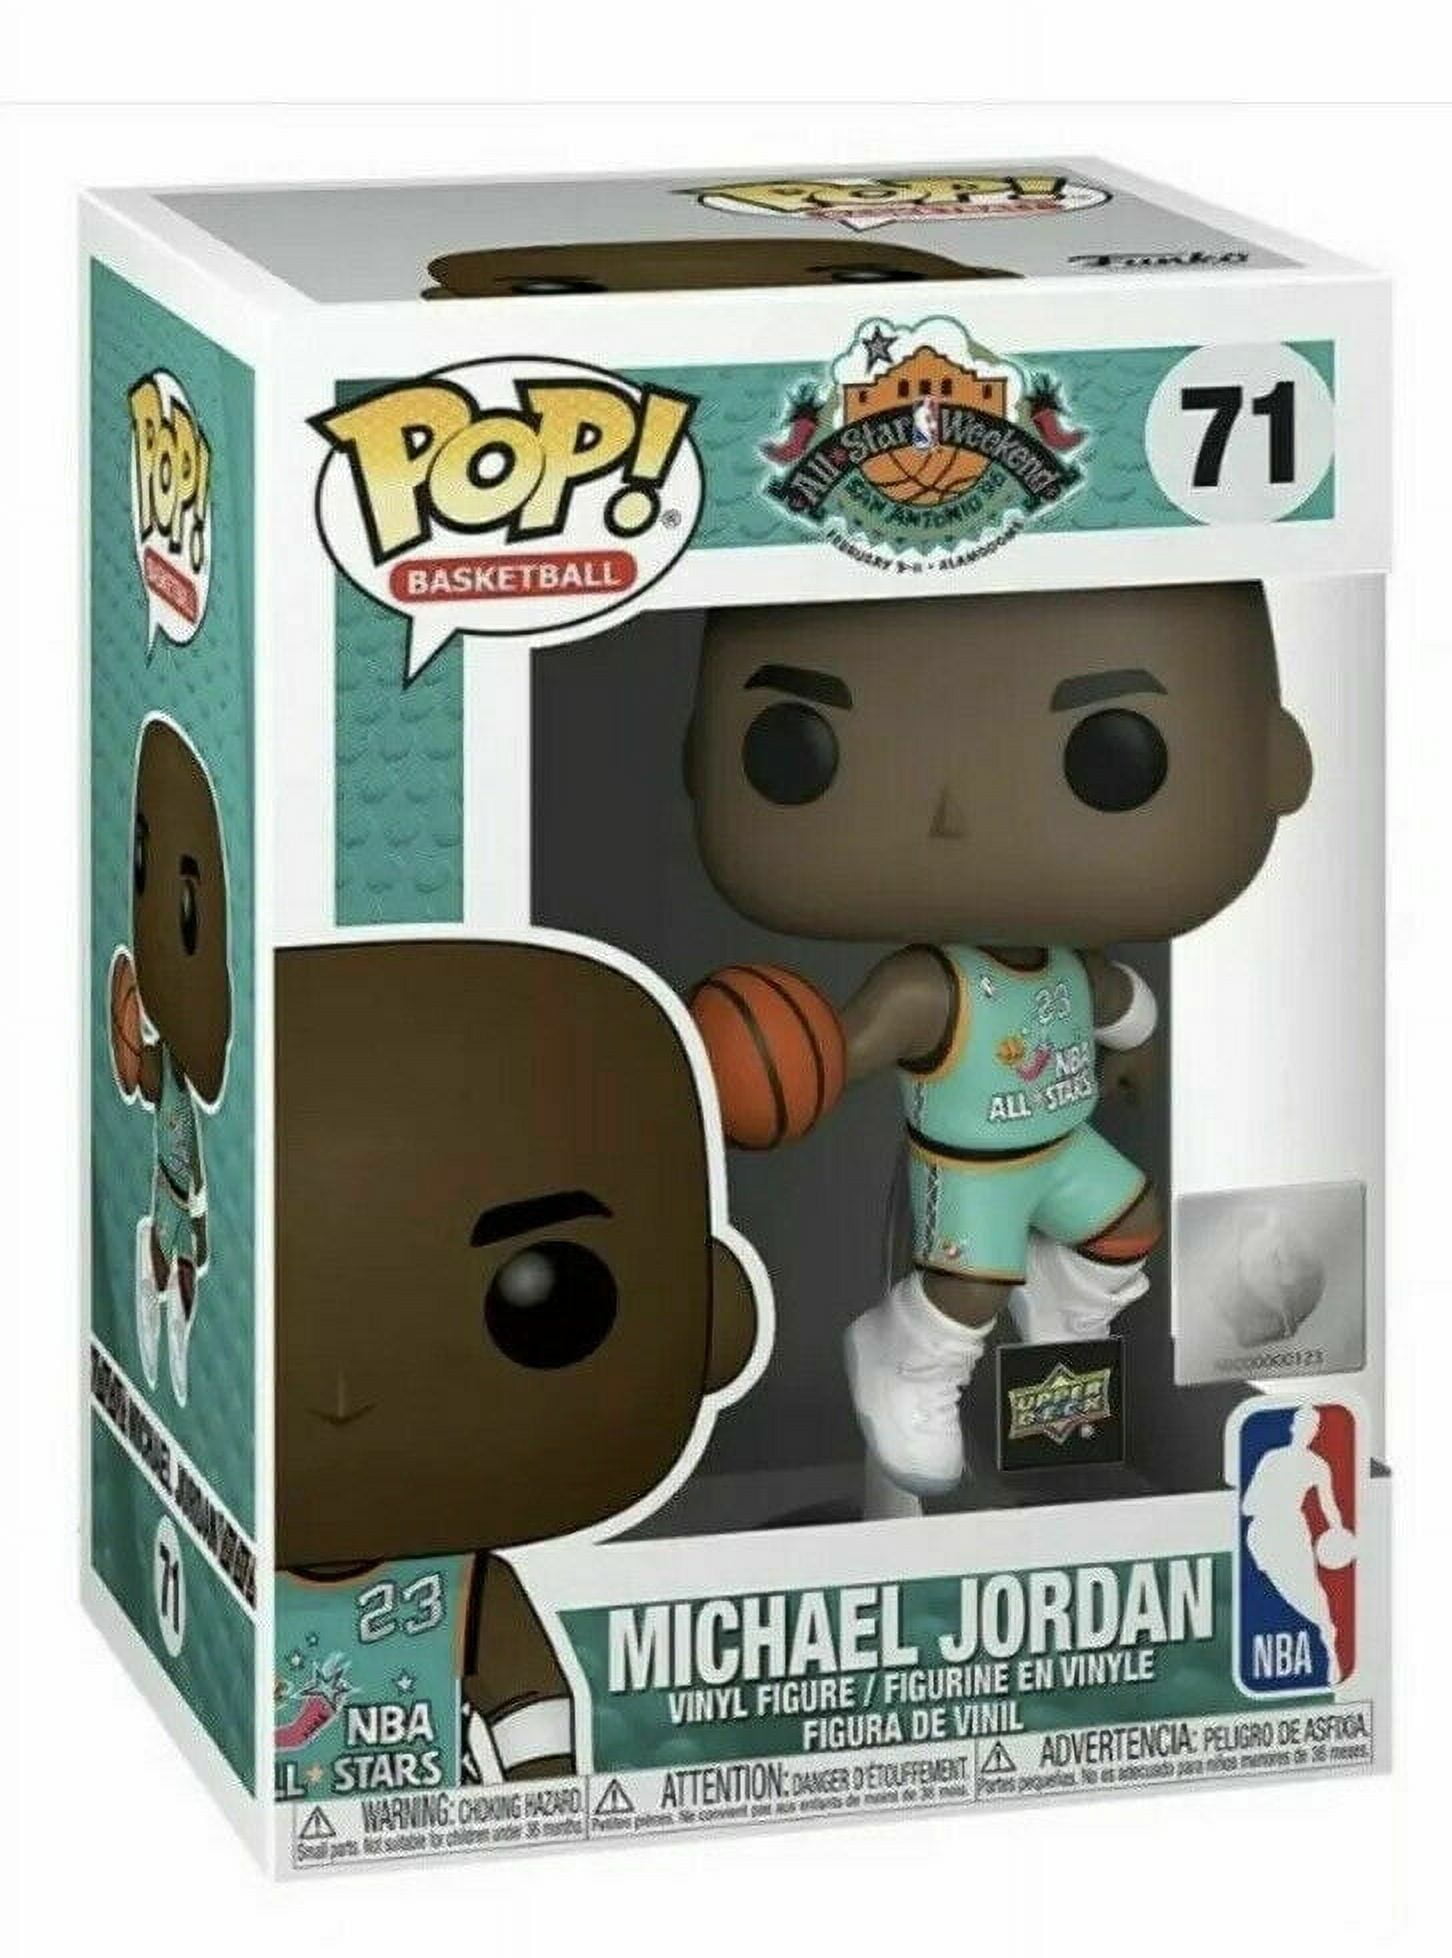 Michael Jordan upper deck /100 pop 4